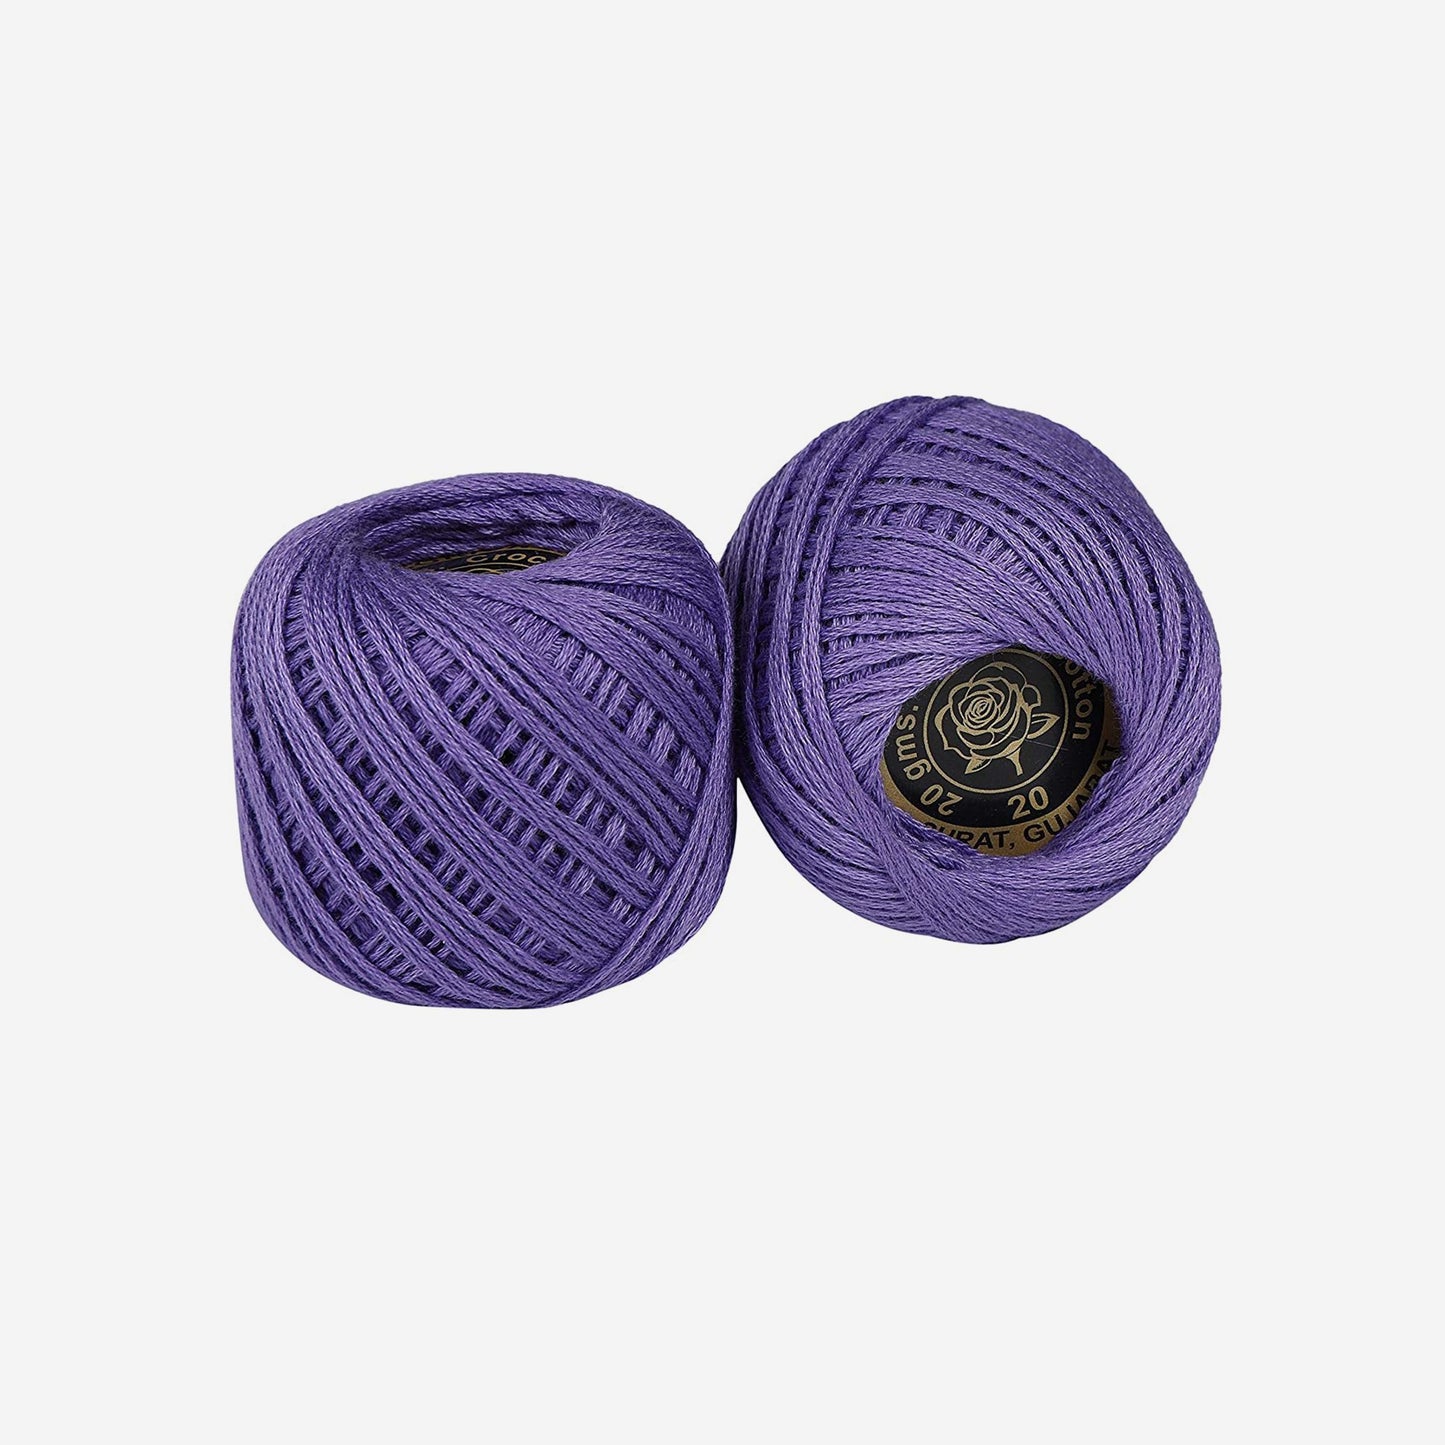 Hand-crochet hoops (Variation 10)